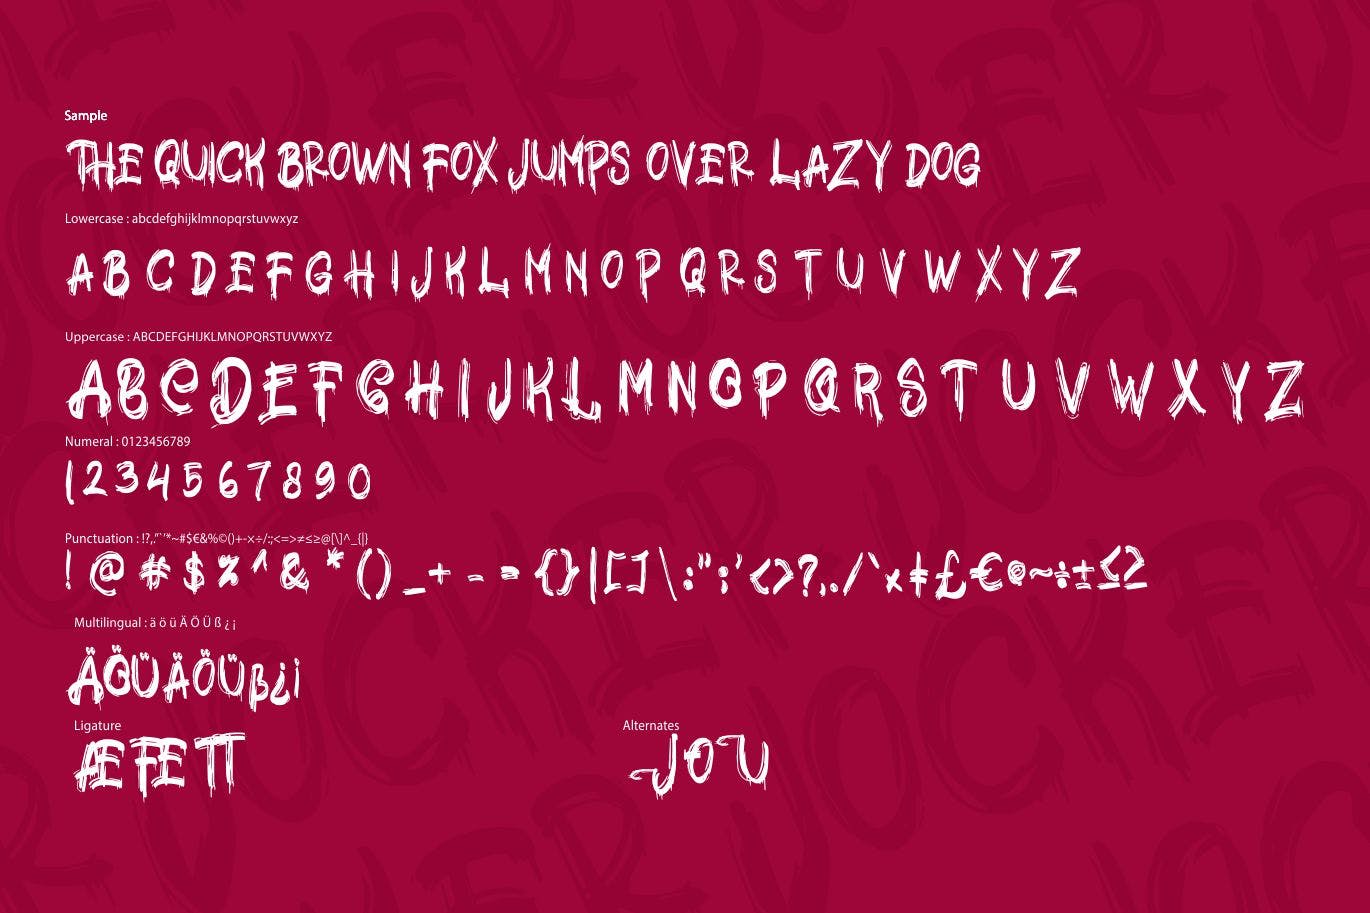 极具个性的英文笔刷装饰字体素材库精选 Jocker | Psychotype Font Theme插图(5)